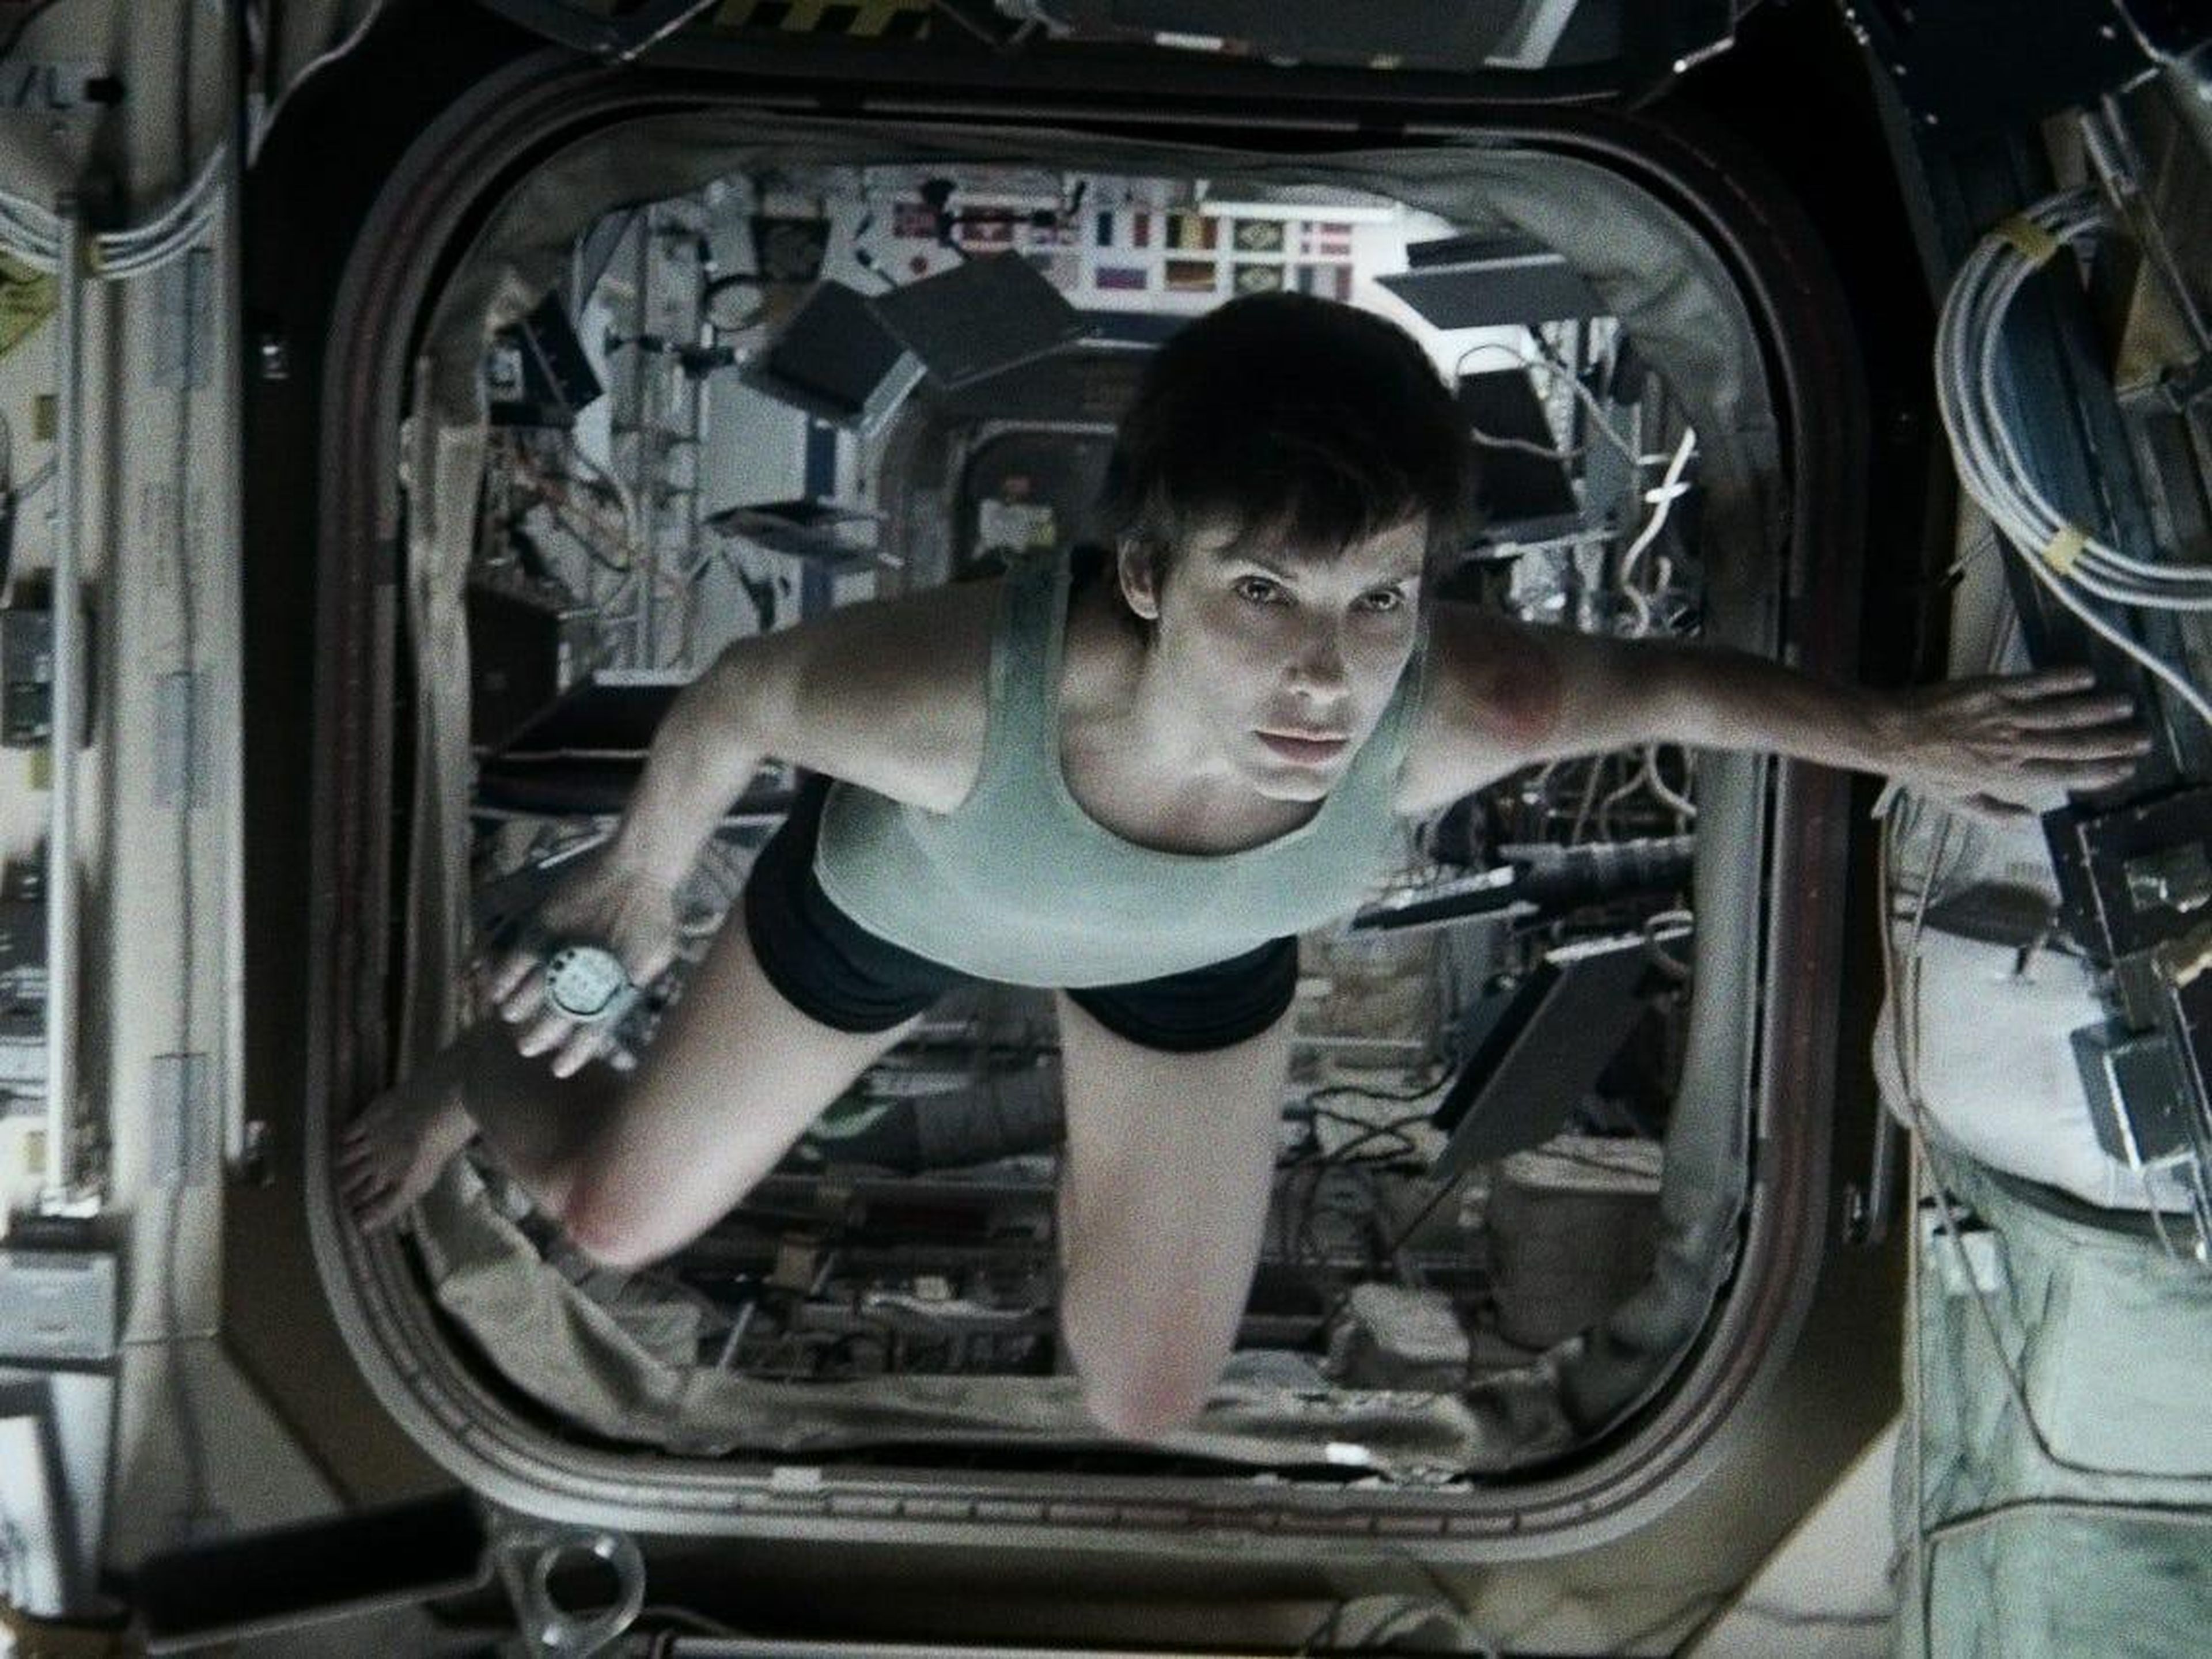 5. Sandra Bullock as Dr. Ryan Stone in "Gravity"